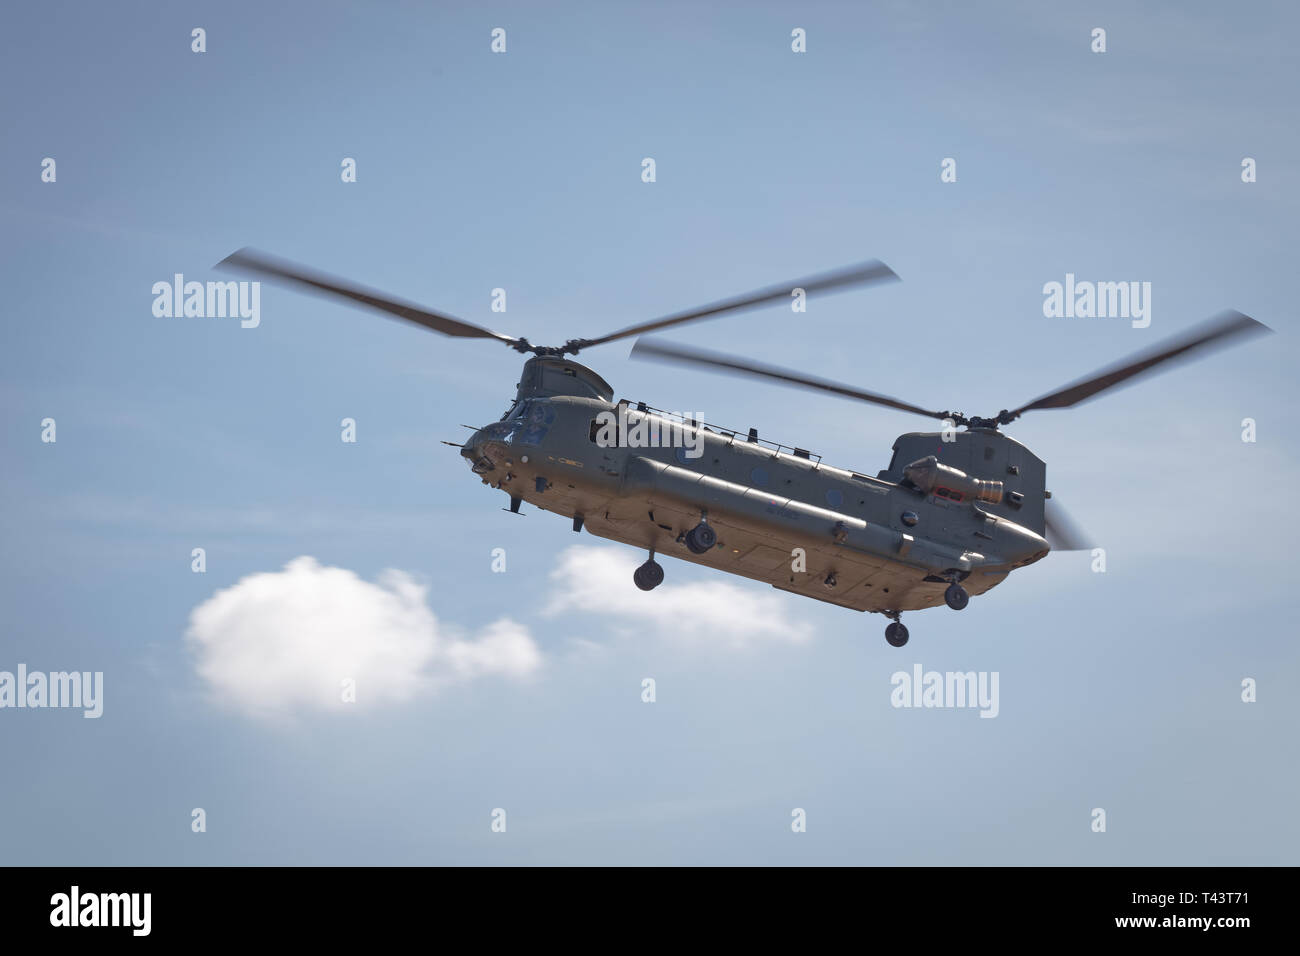 YEOVILTON, UK - 7 juillet 2018 : Un hélicoptère Chinook de la RAF en vol au dessus de l'aérodrome de RNAS Yeovilton dans le sud ouest de l'UK Banque D'Images